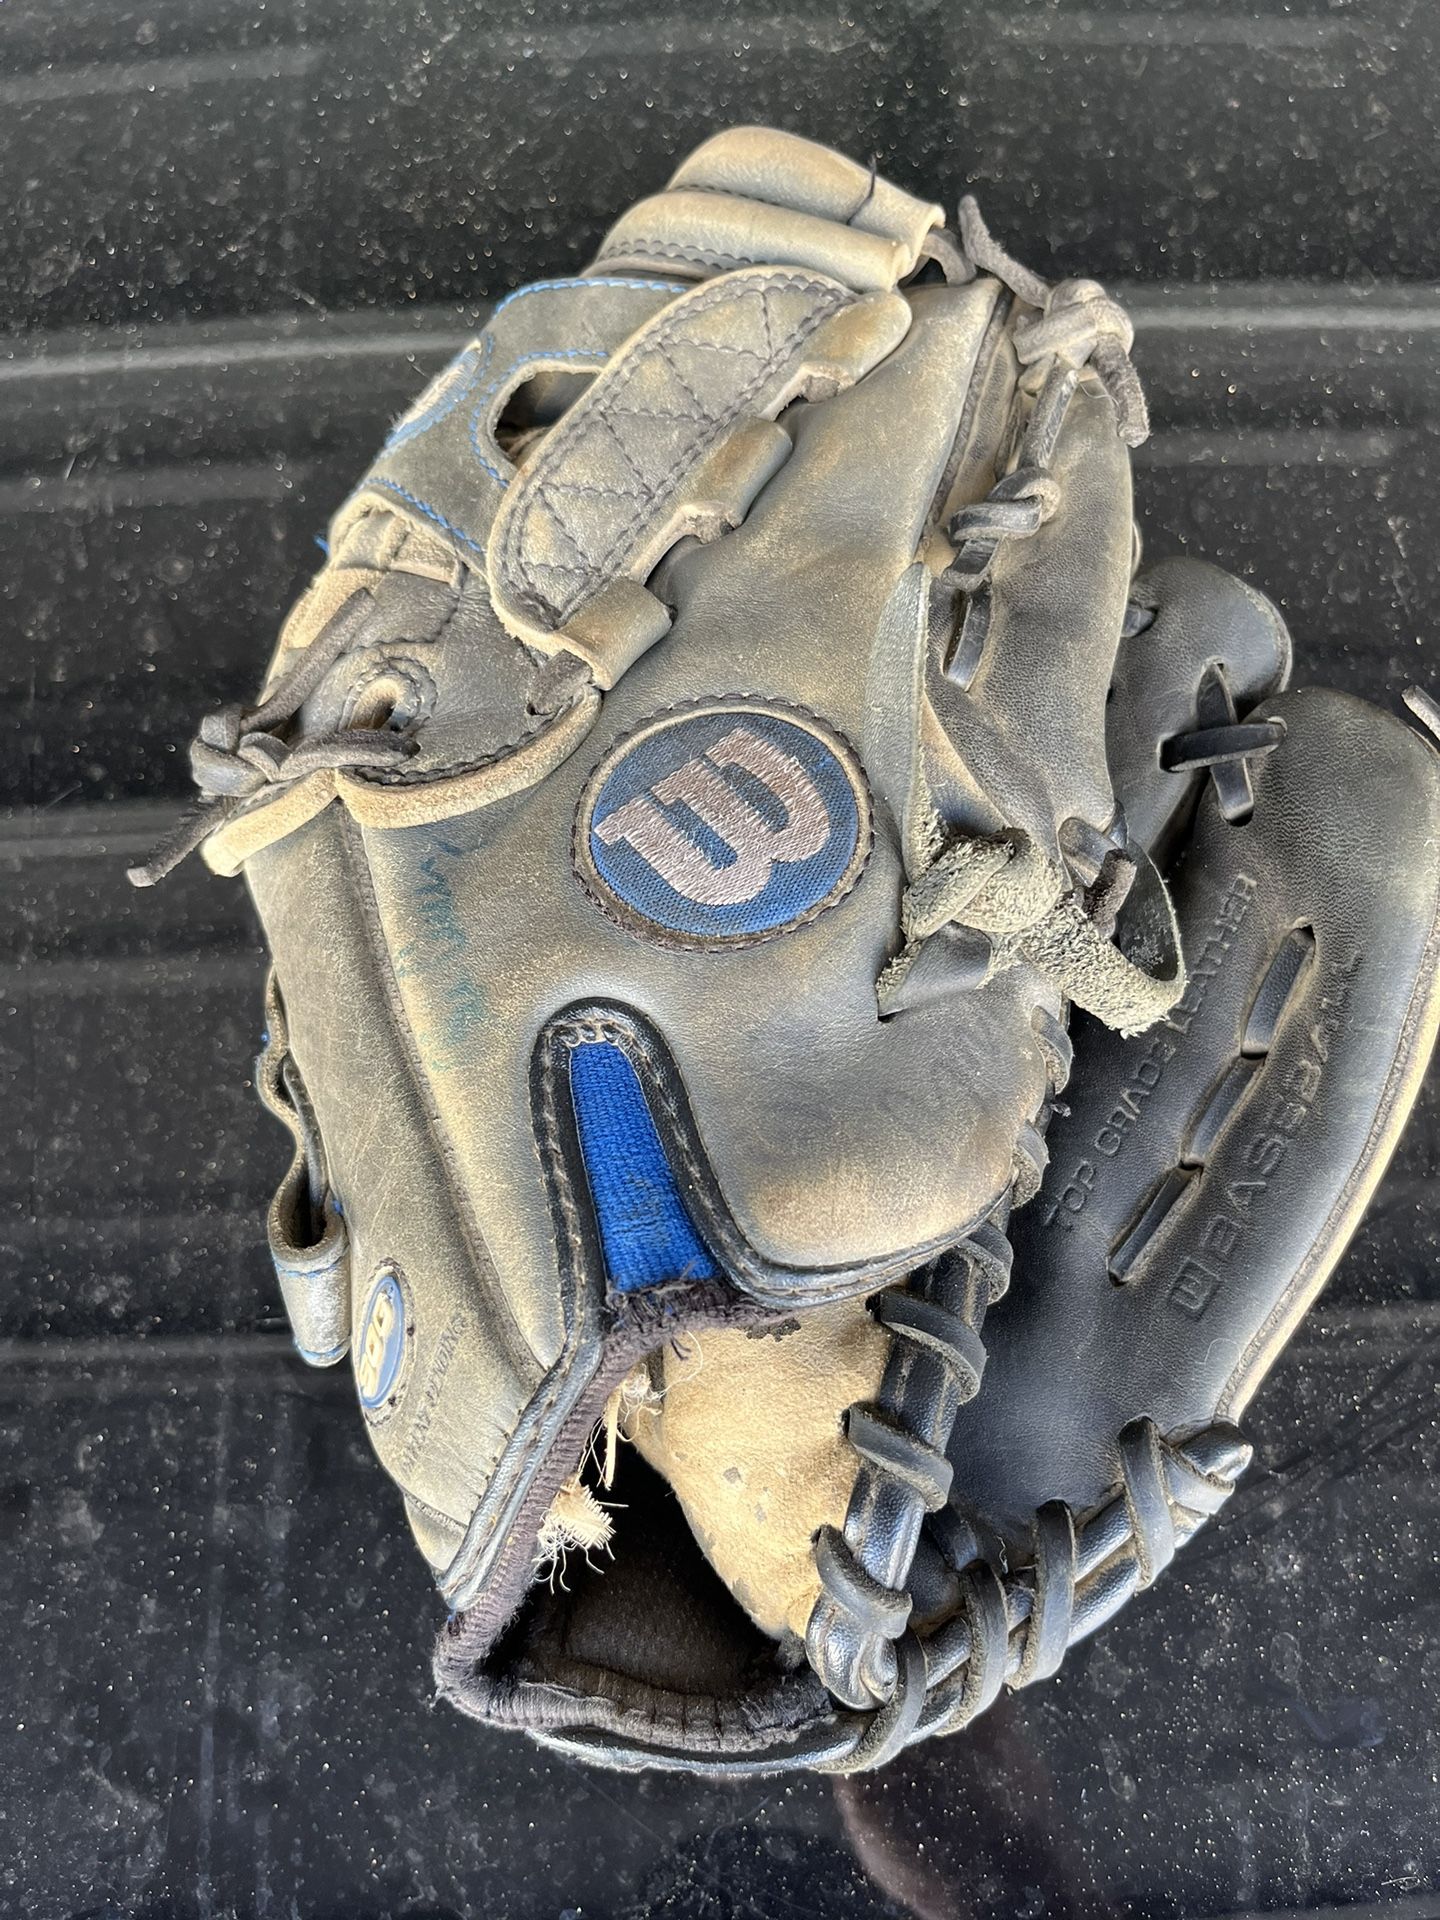 Wilson Youth Baseball Glove / Mitt